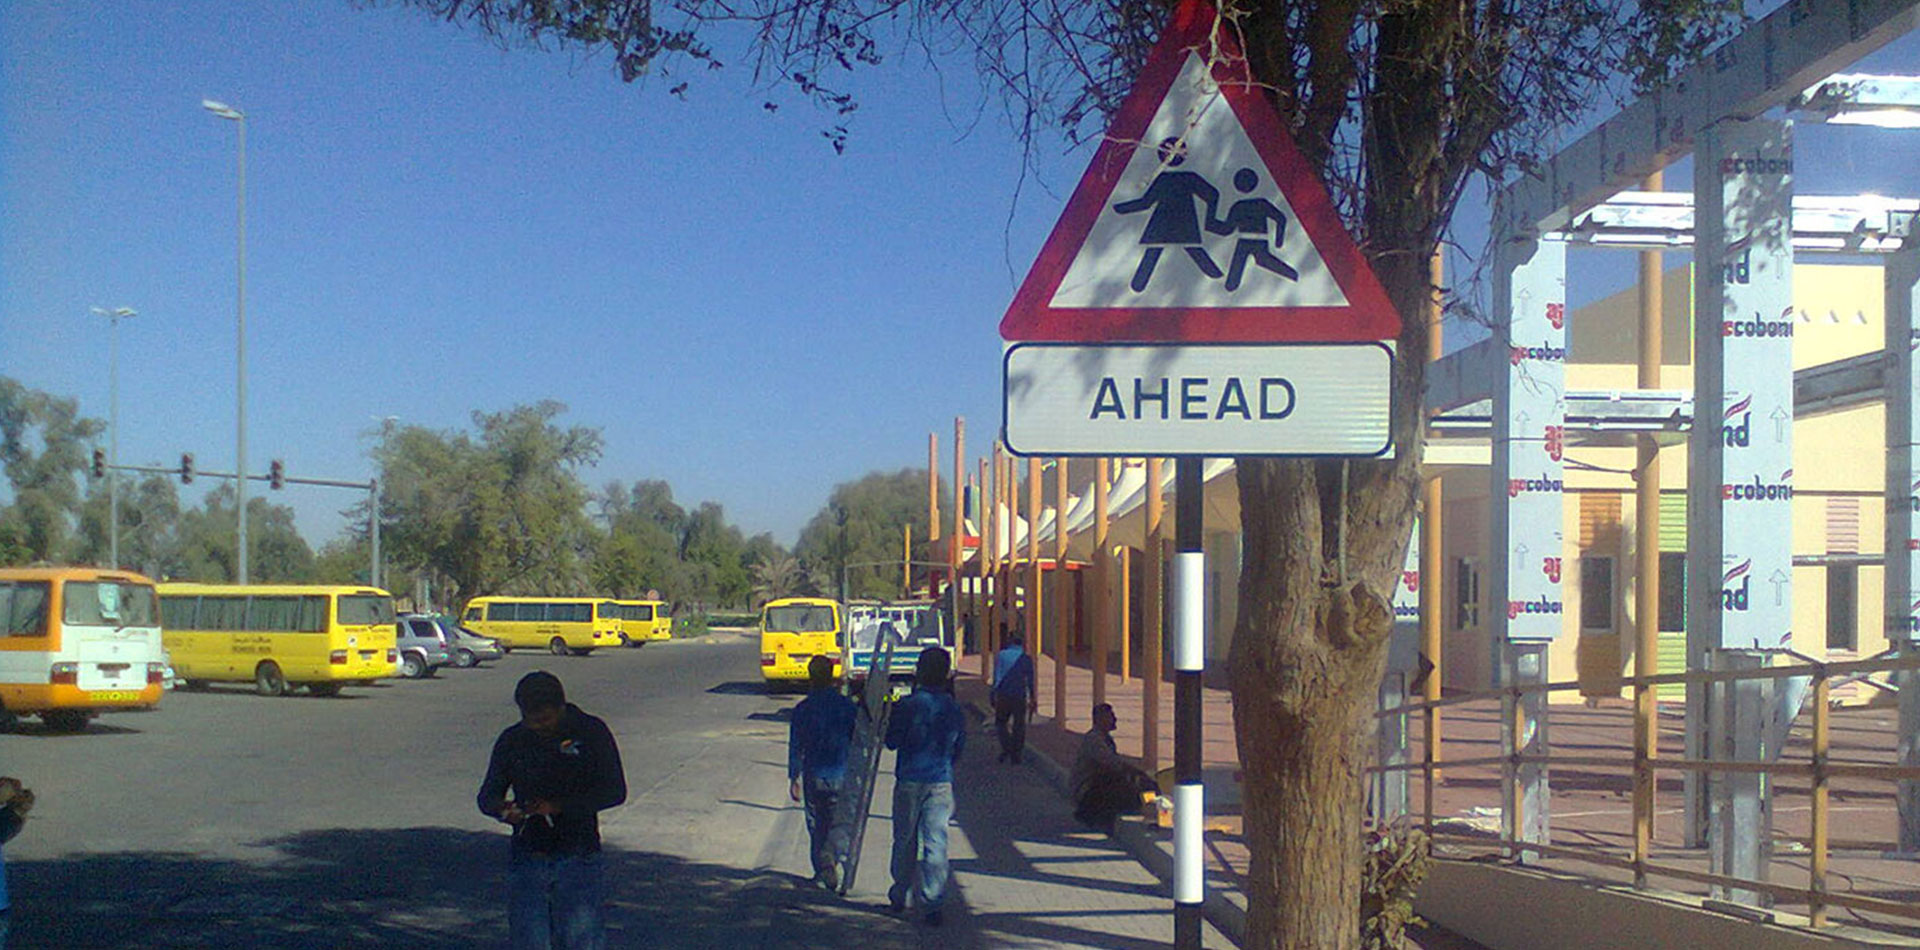 Warning Signage showing school ahead